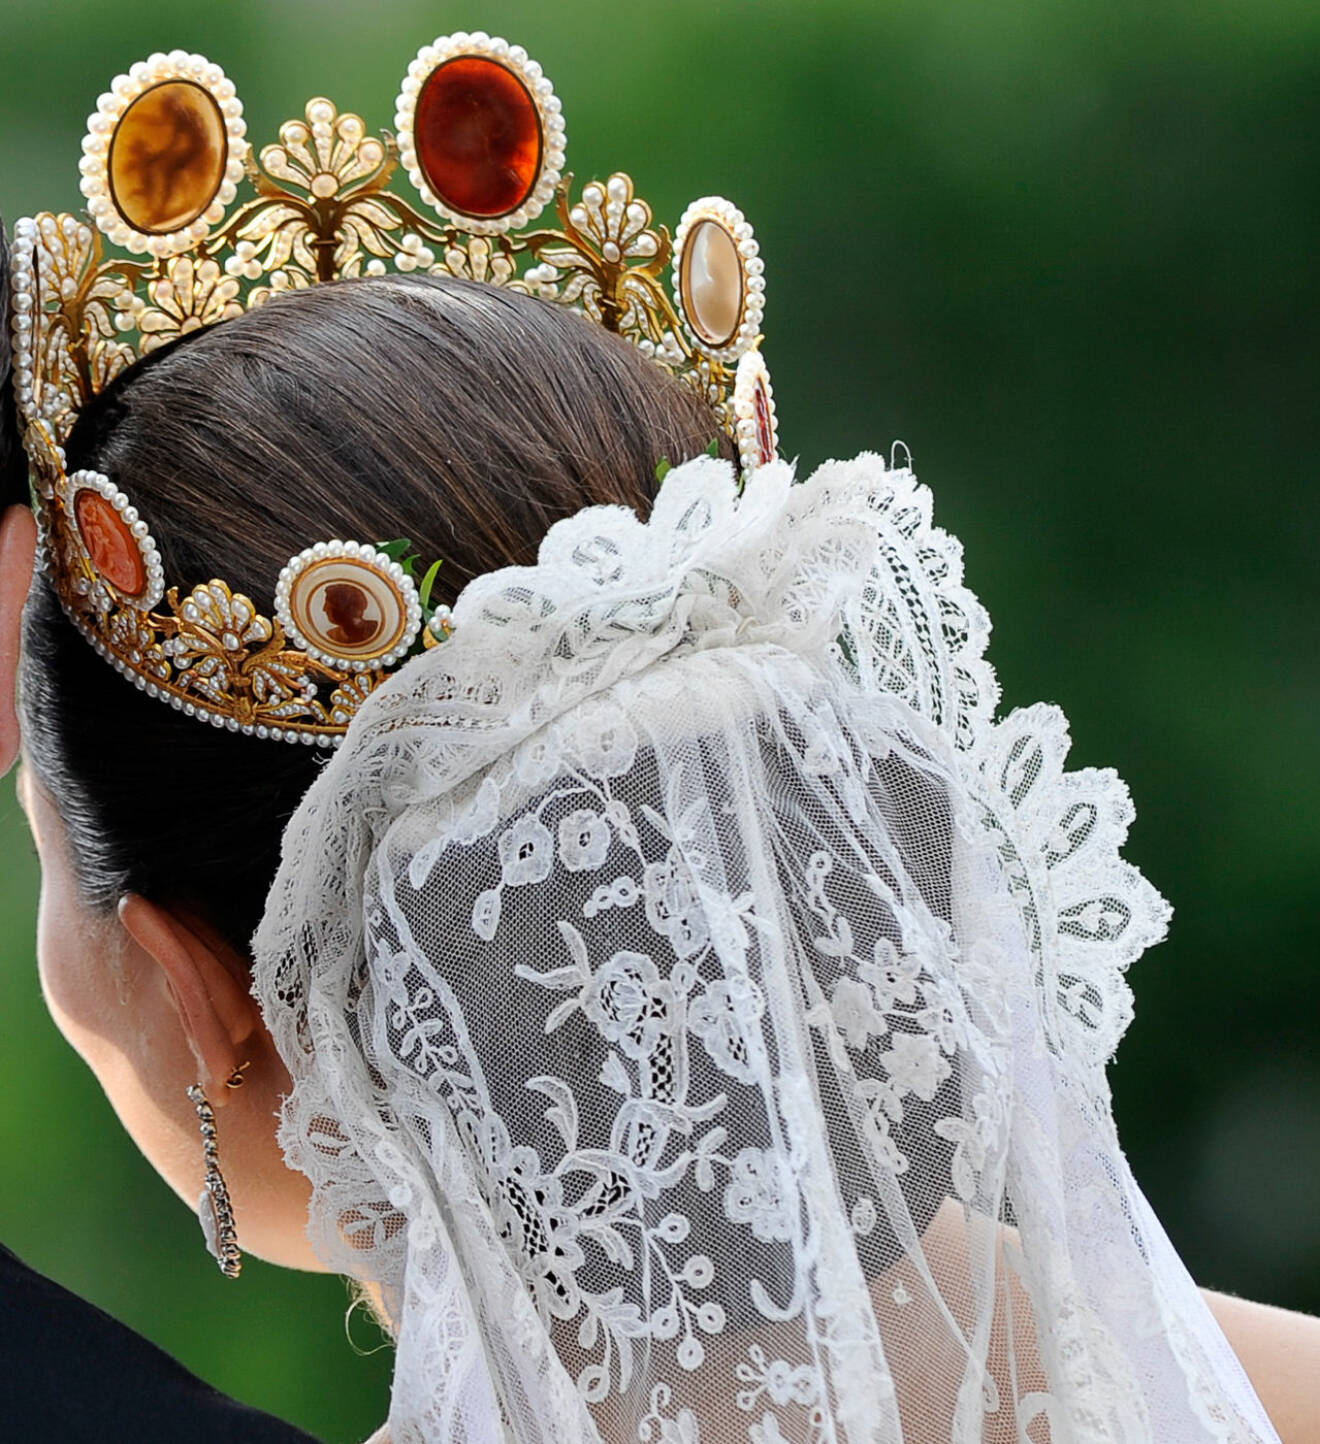 Kronprinsessan Victoria som brud, med en myrtenkvist instucken mellan diademet och slöjan.